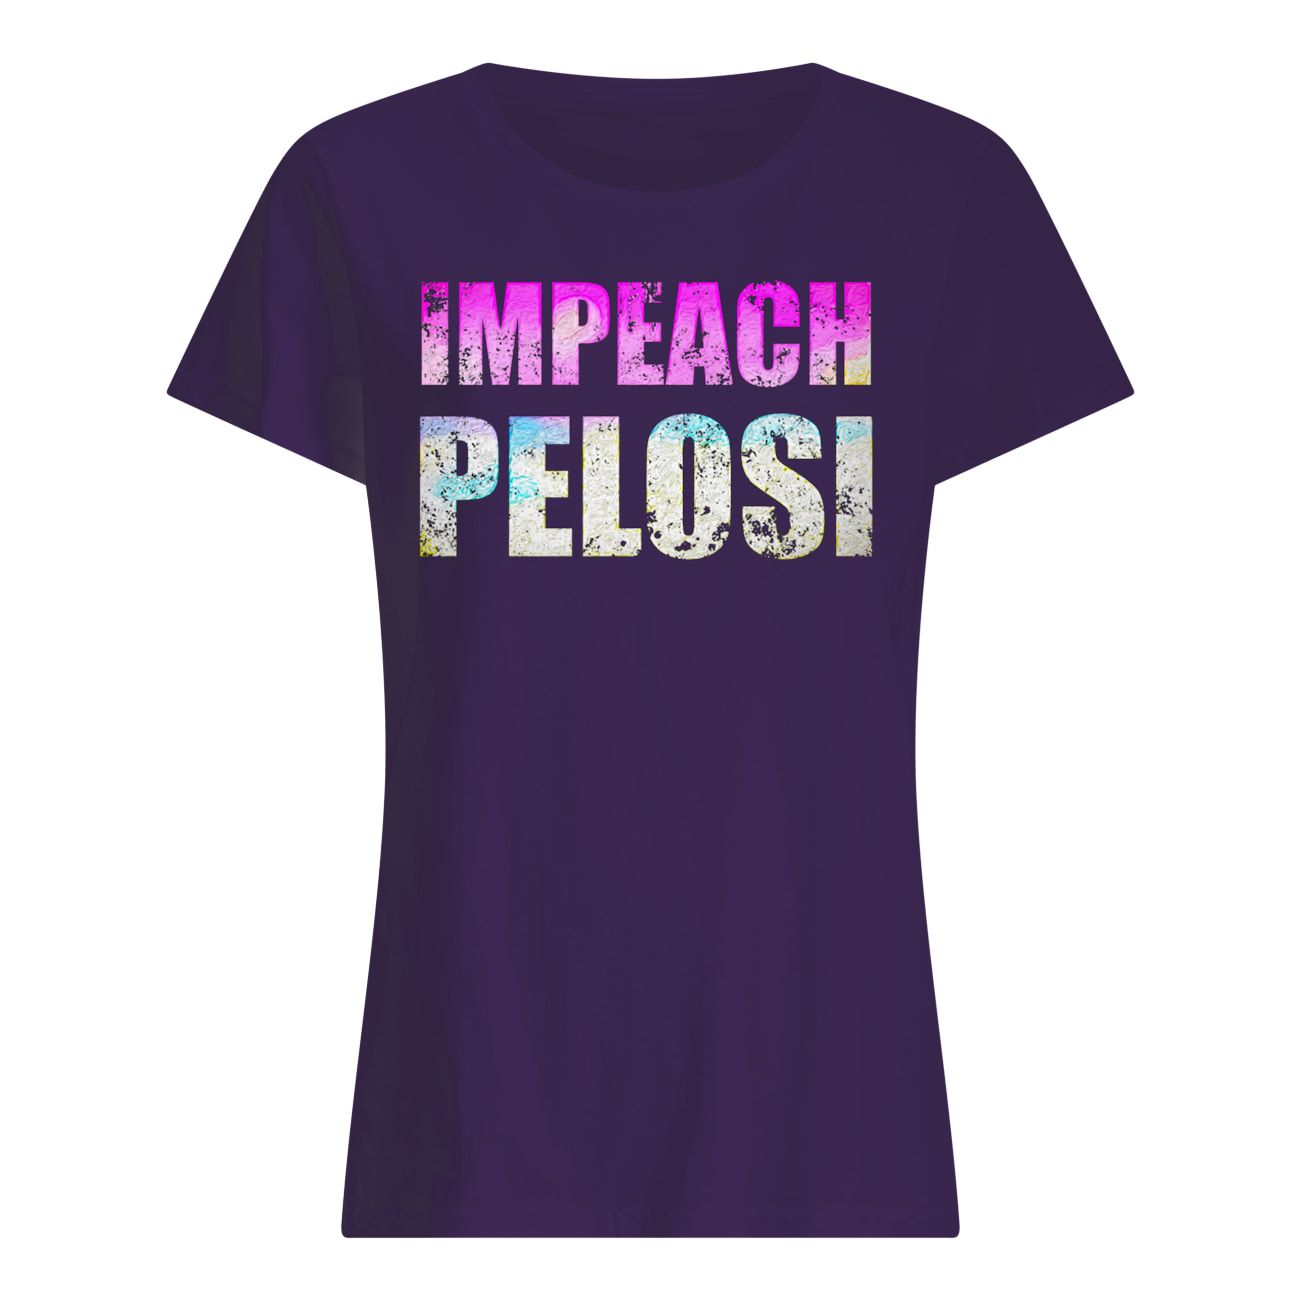 Impeach nancy pelosi womens shirt